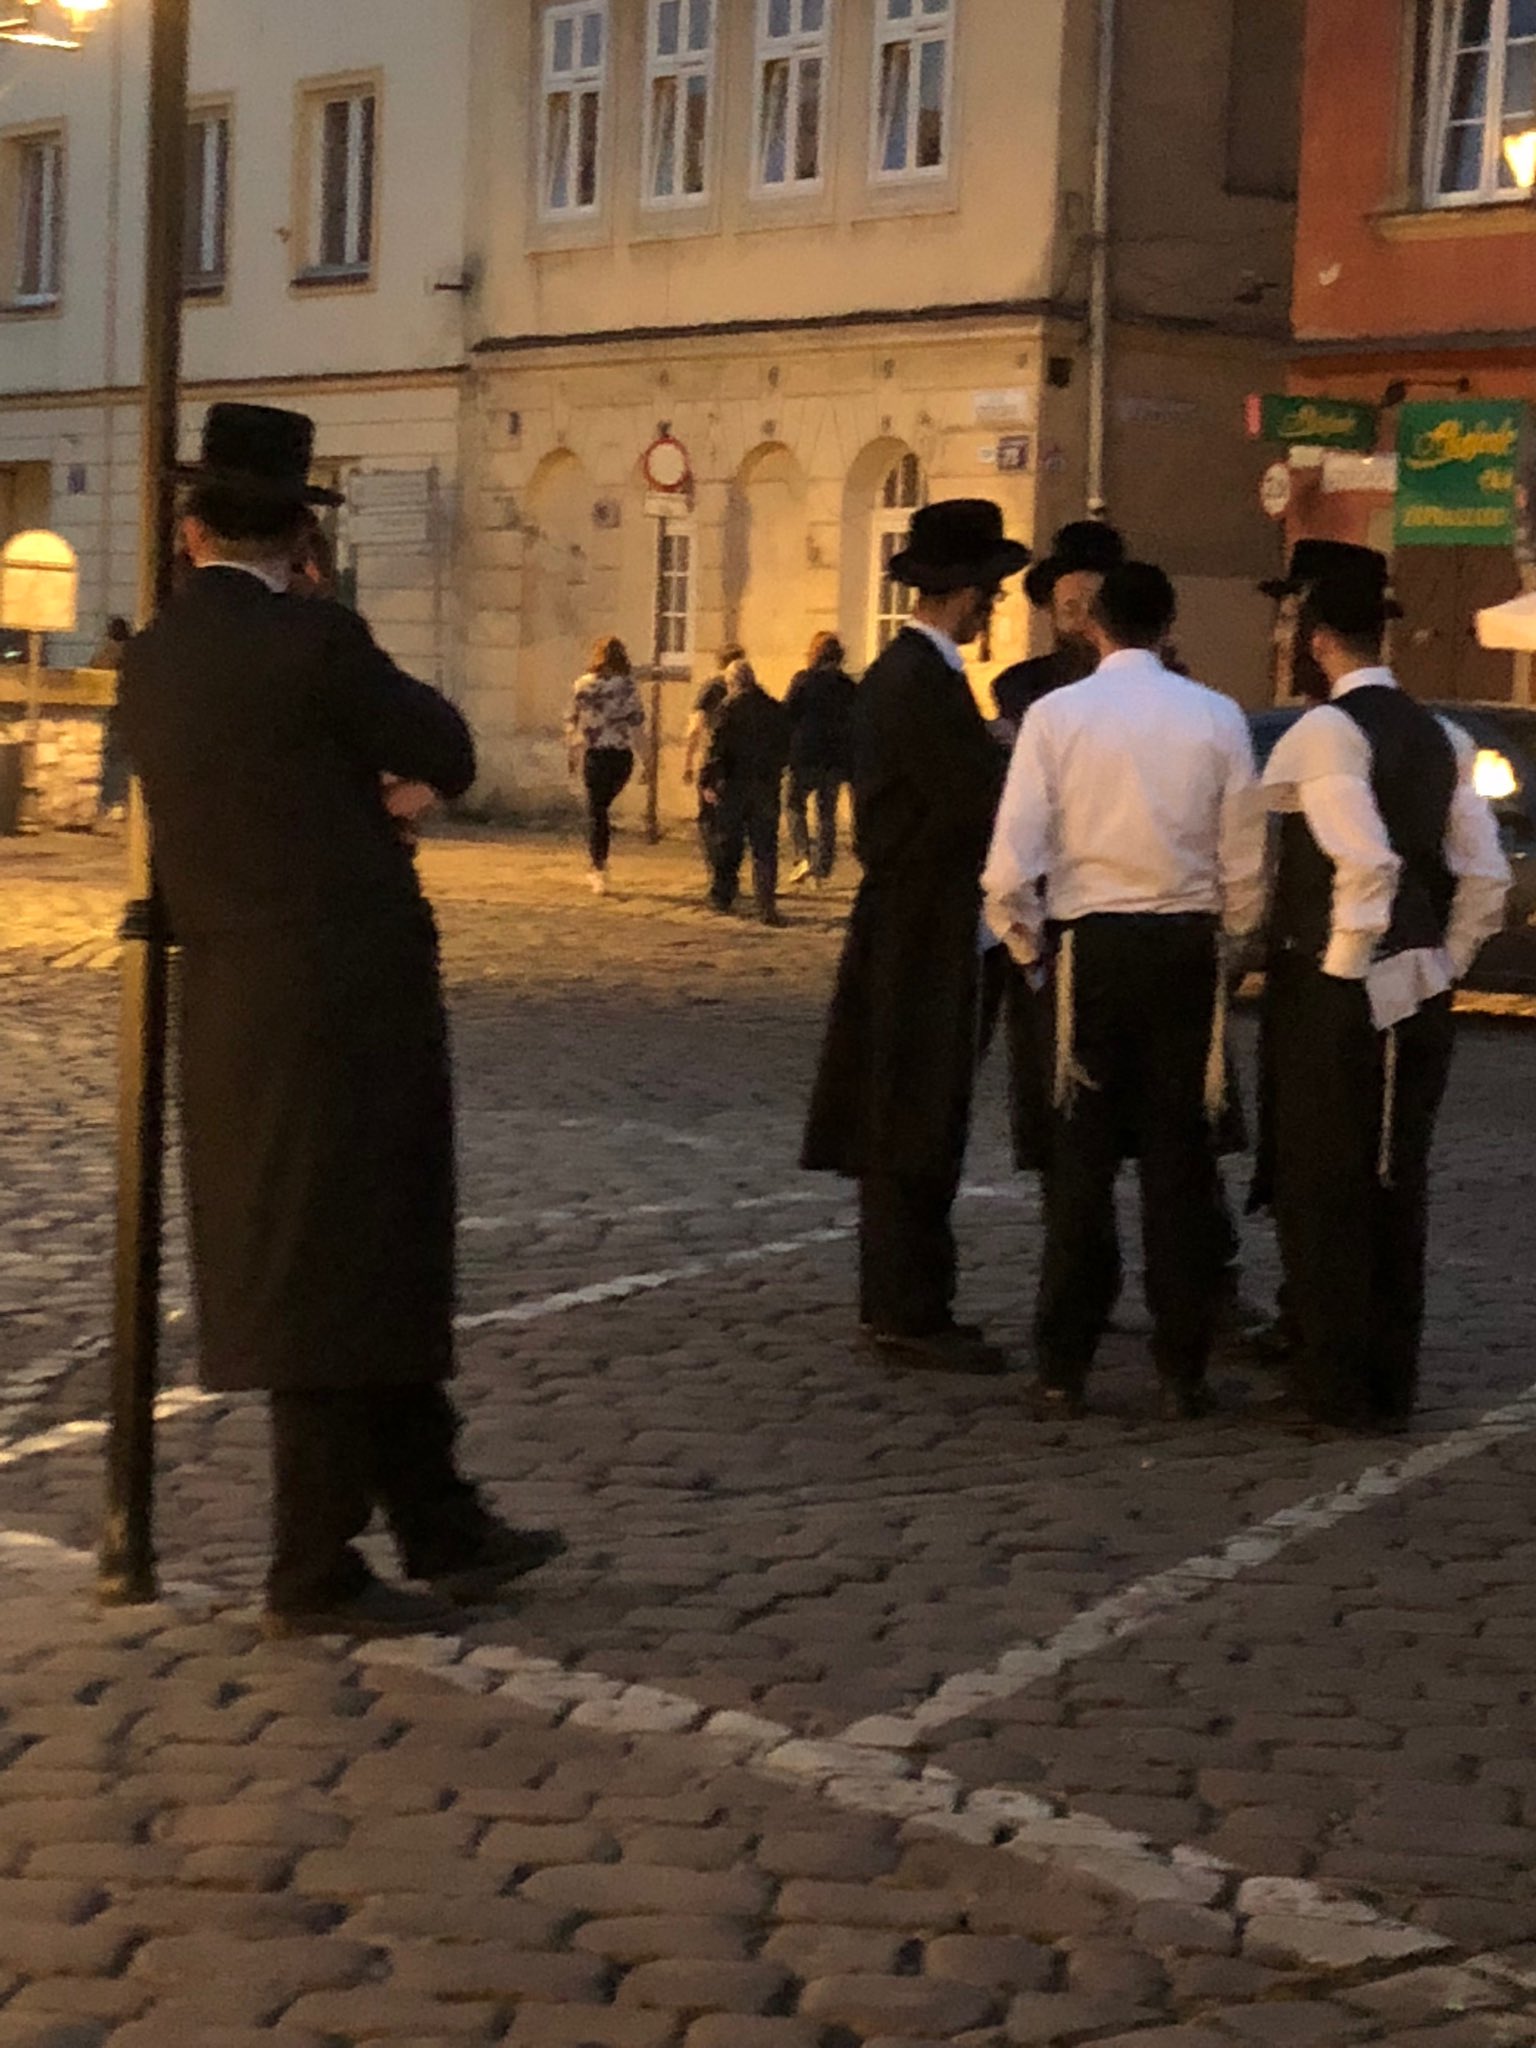 יהודים חרדים בפולין (צילום באדיבות המצלם)